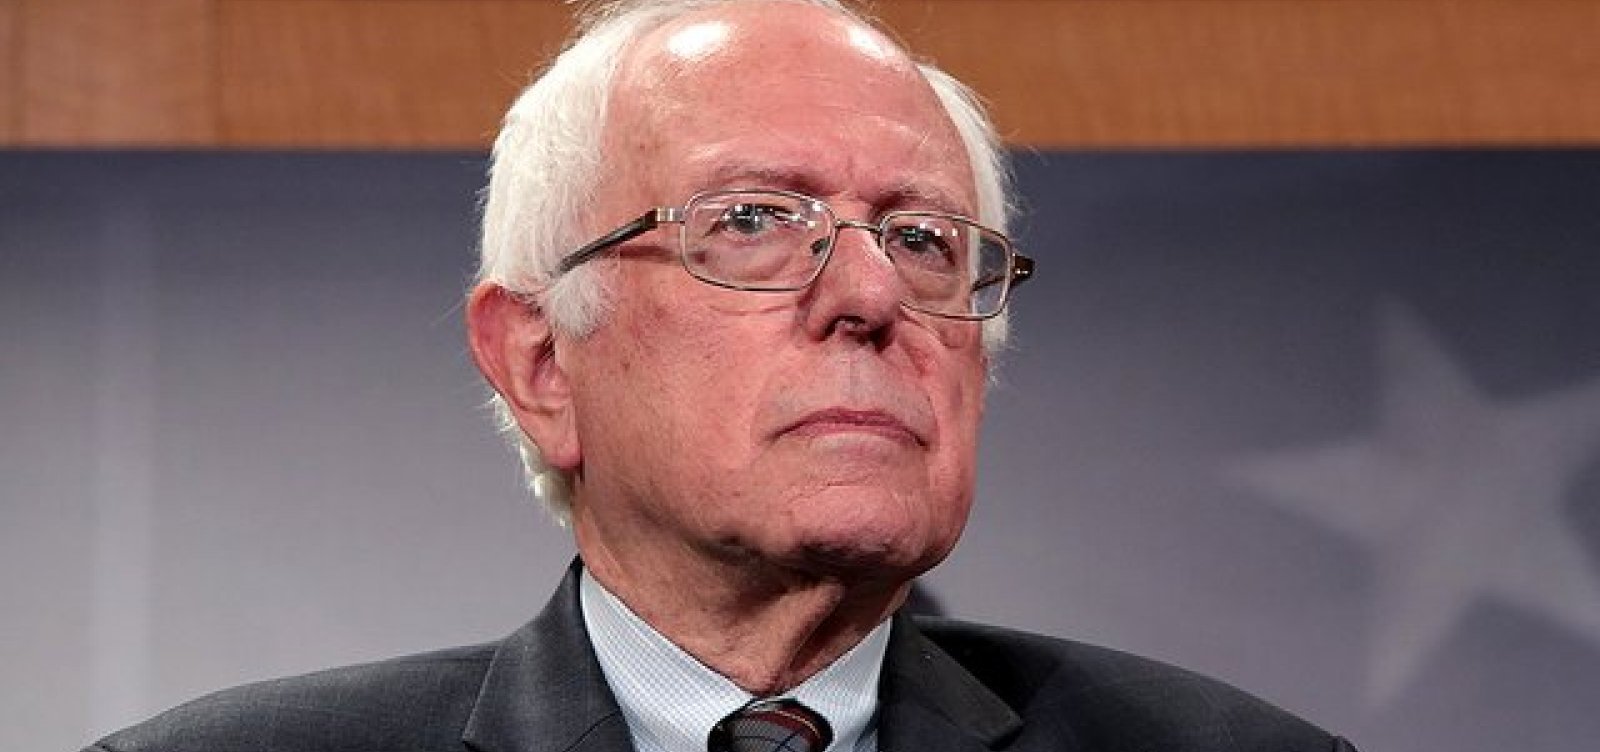 Bernie Sanders vence primária democrata em New Hampshire